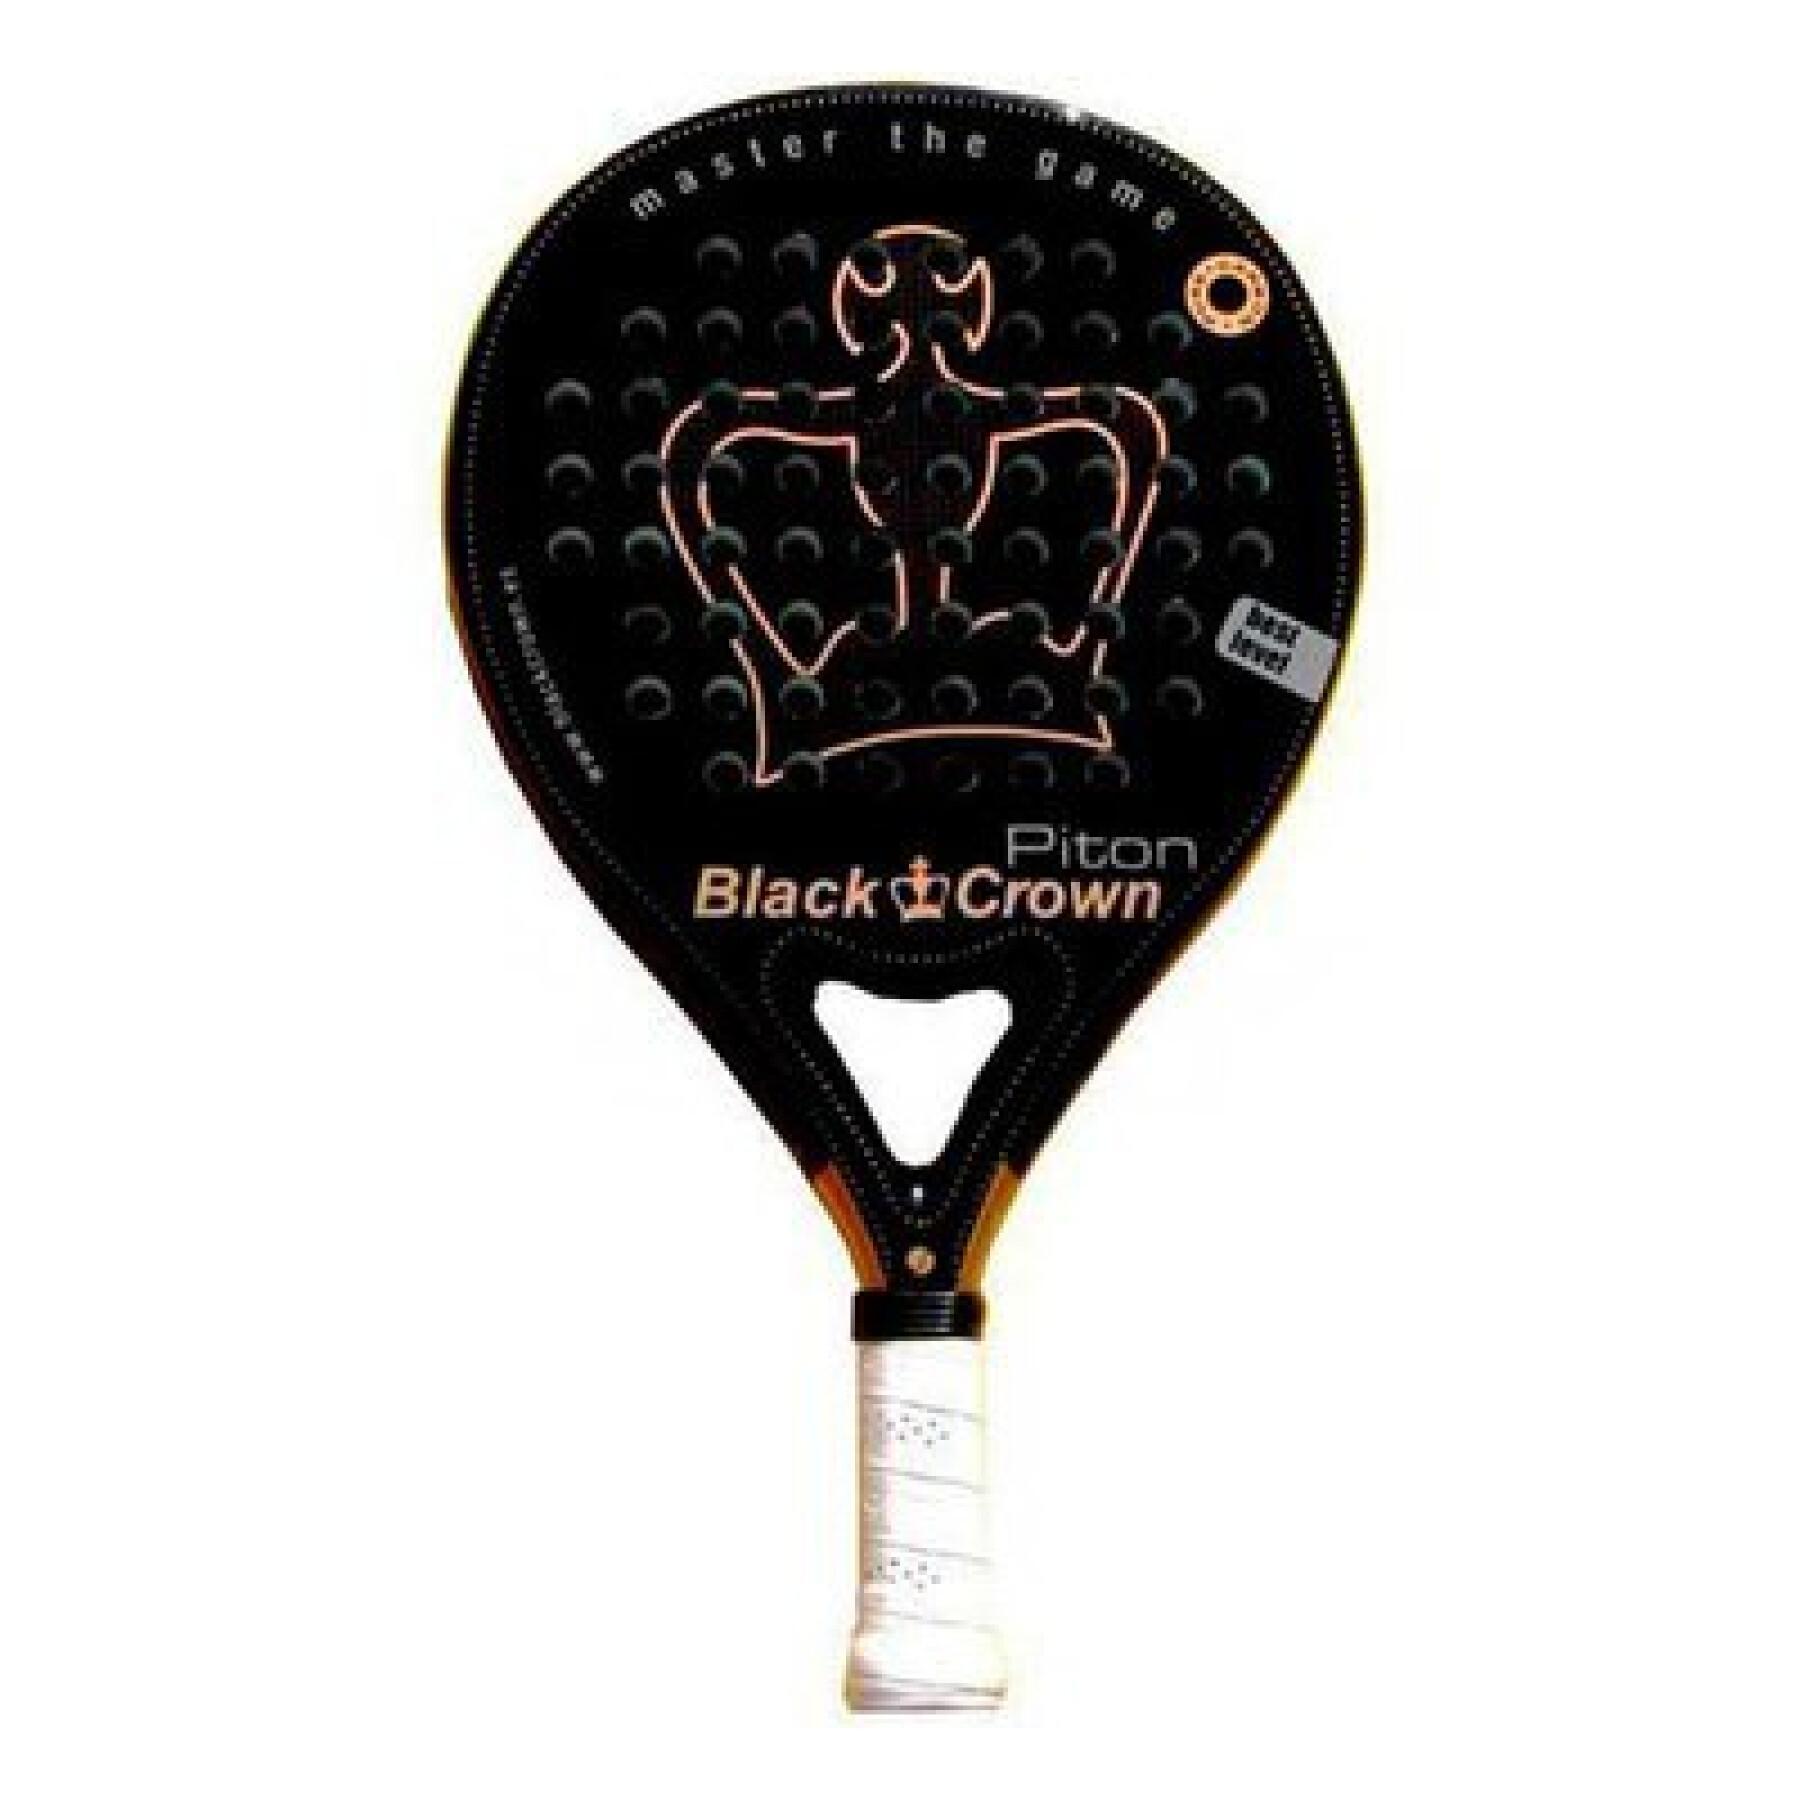 Rakieta do tenisa stołowego Black Crown Piton